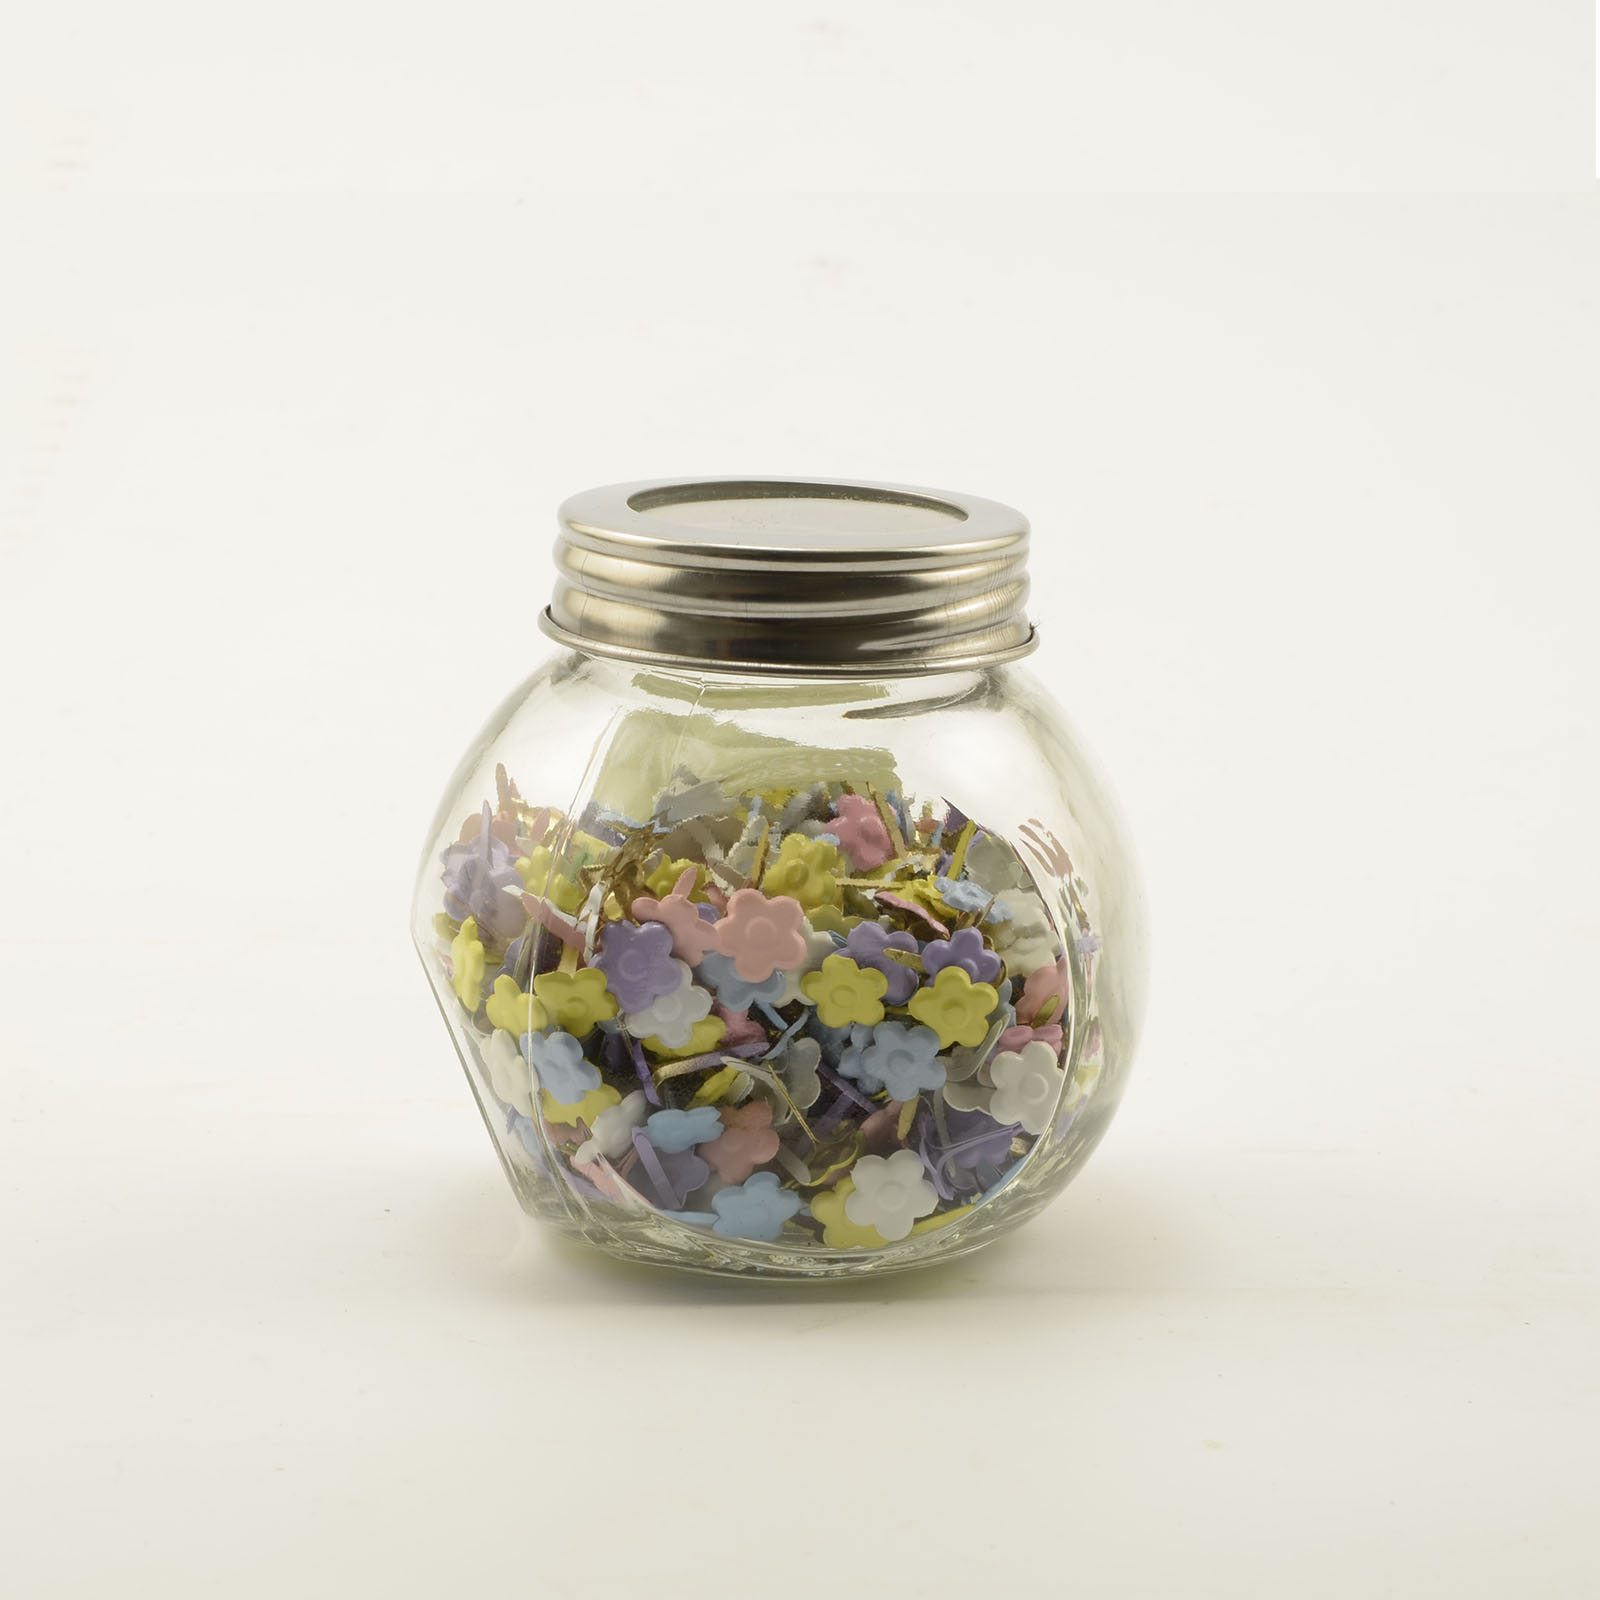 Vaessen Creative • Fermacampioni in jar 100g Flower